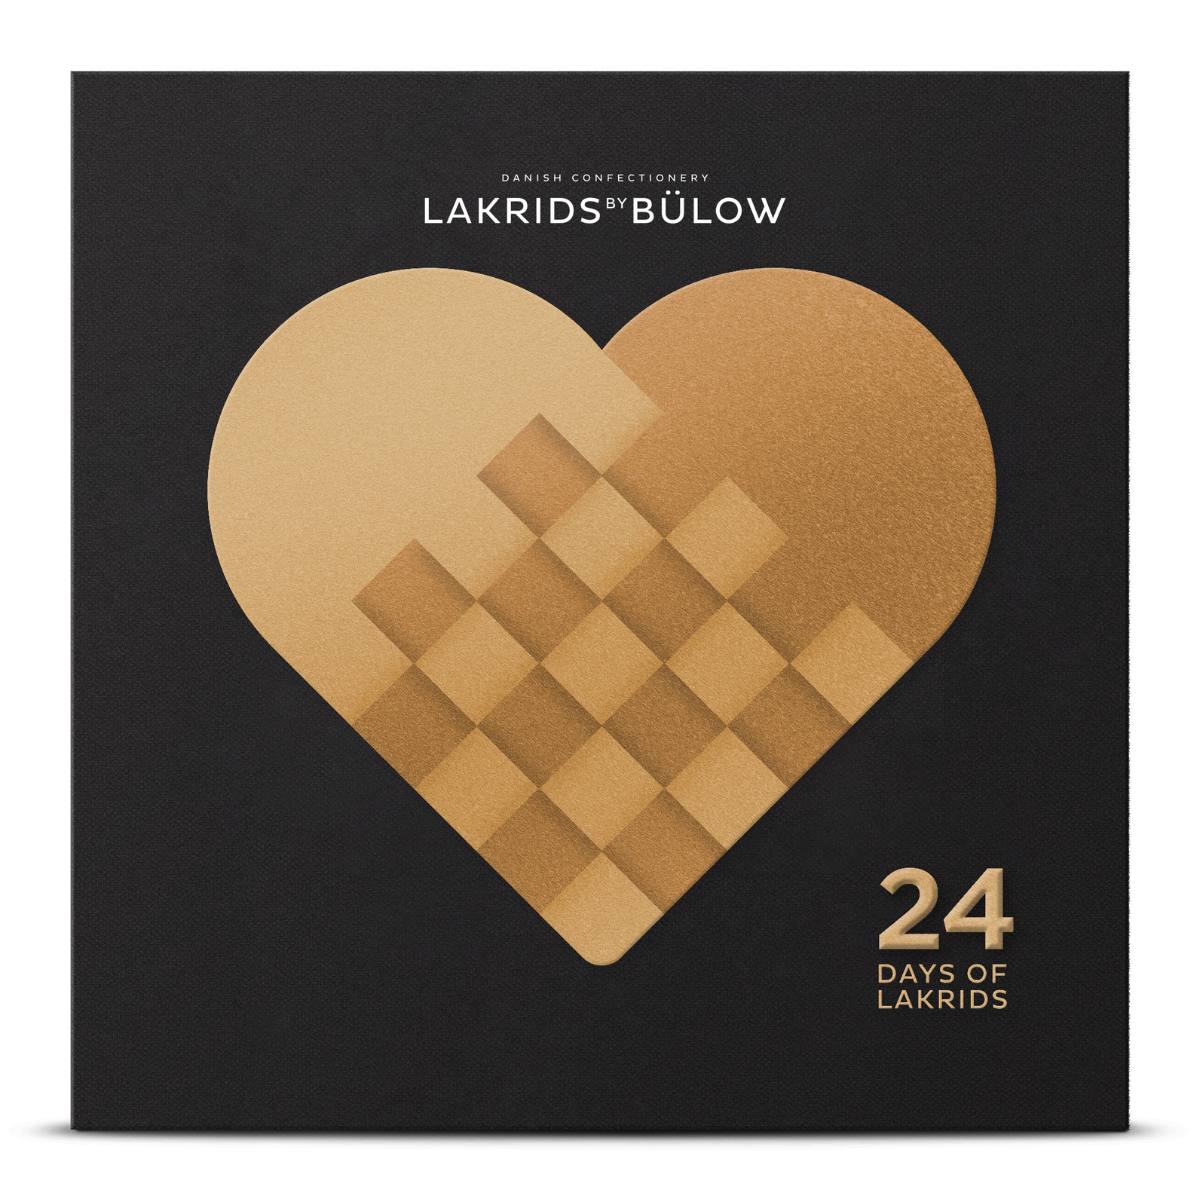 Lakrids by Bülow Adventskalender - 24 Days of Lakrids